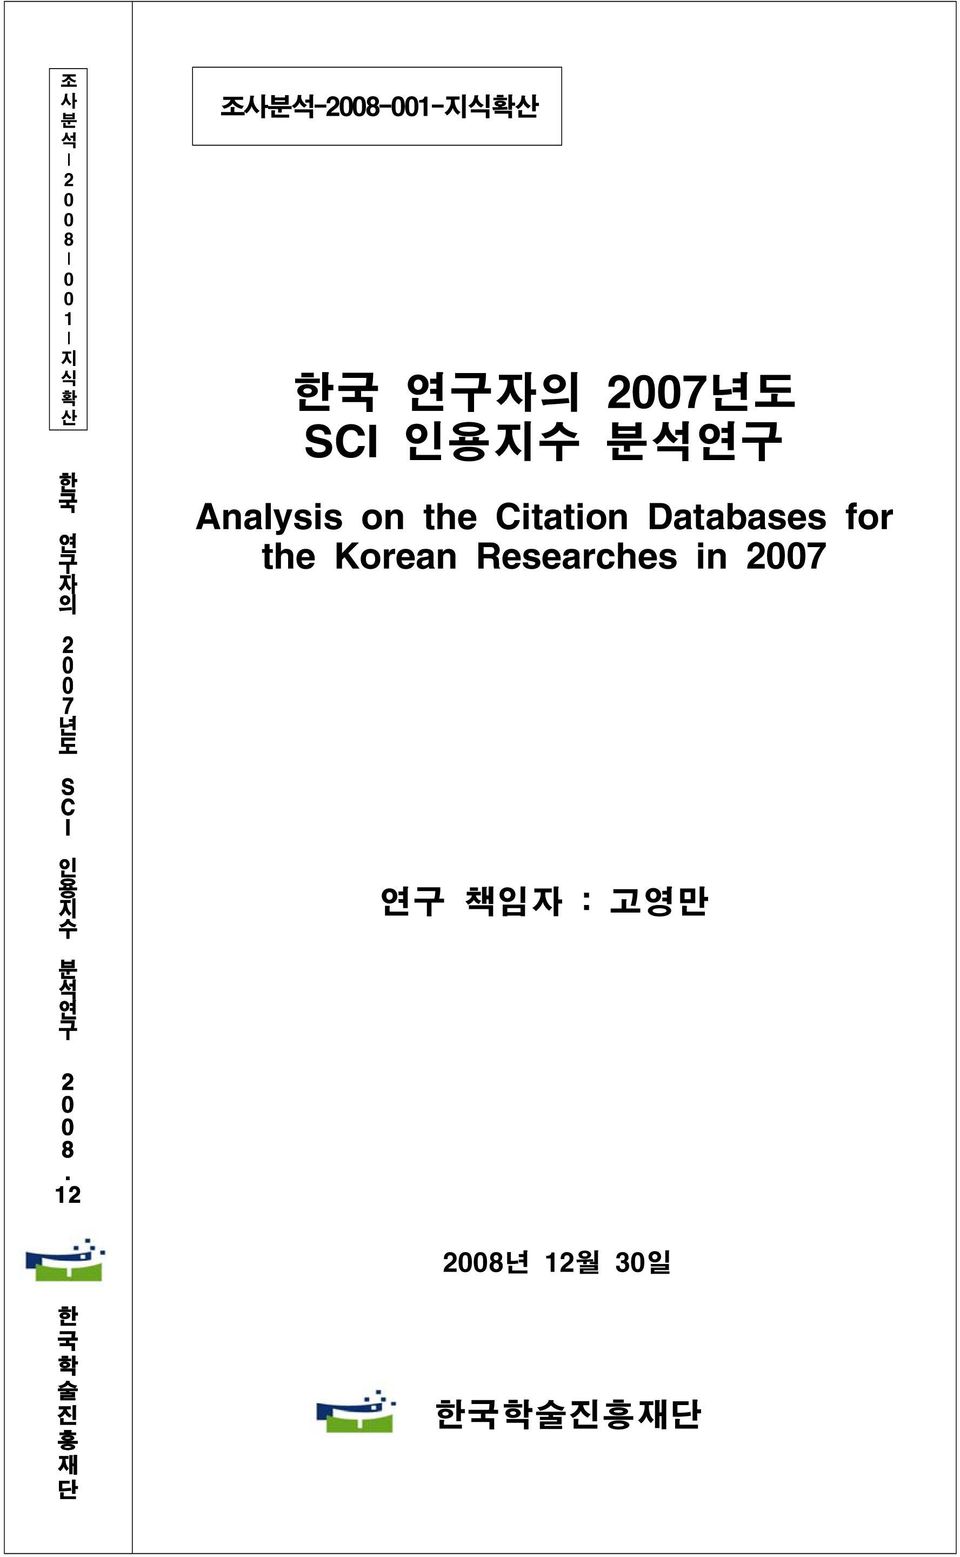 1 2 한 국 학 술 진 흥 재 단 조사분석-2008-001-지식확산 한국 연구자의 200 7년도 SCI 인용지수